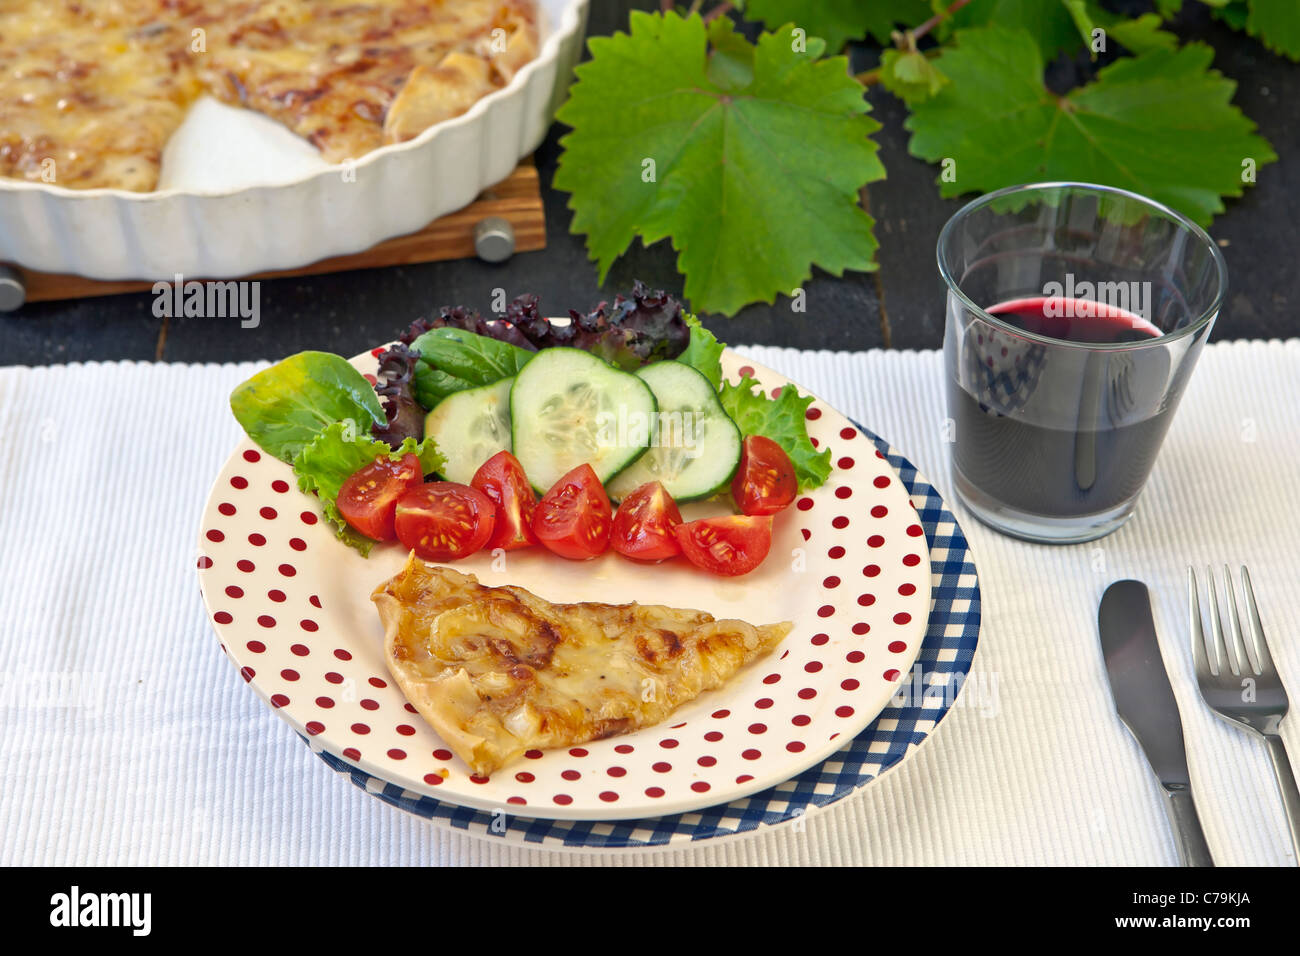 Un oignon-Tarte au fromage blanc, garni d'une salade et un verre de vin rouge Banque D'Images